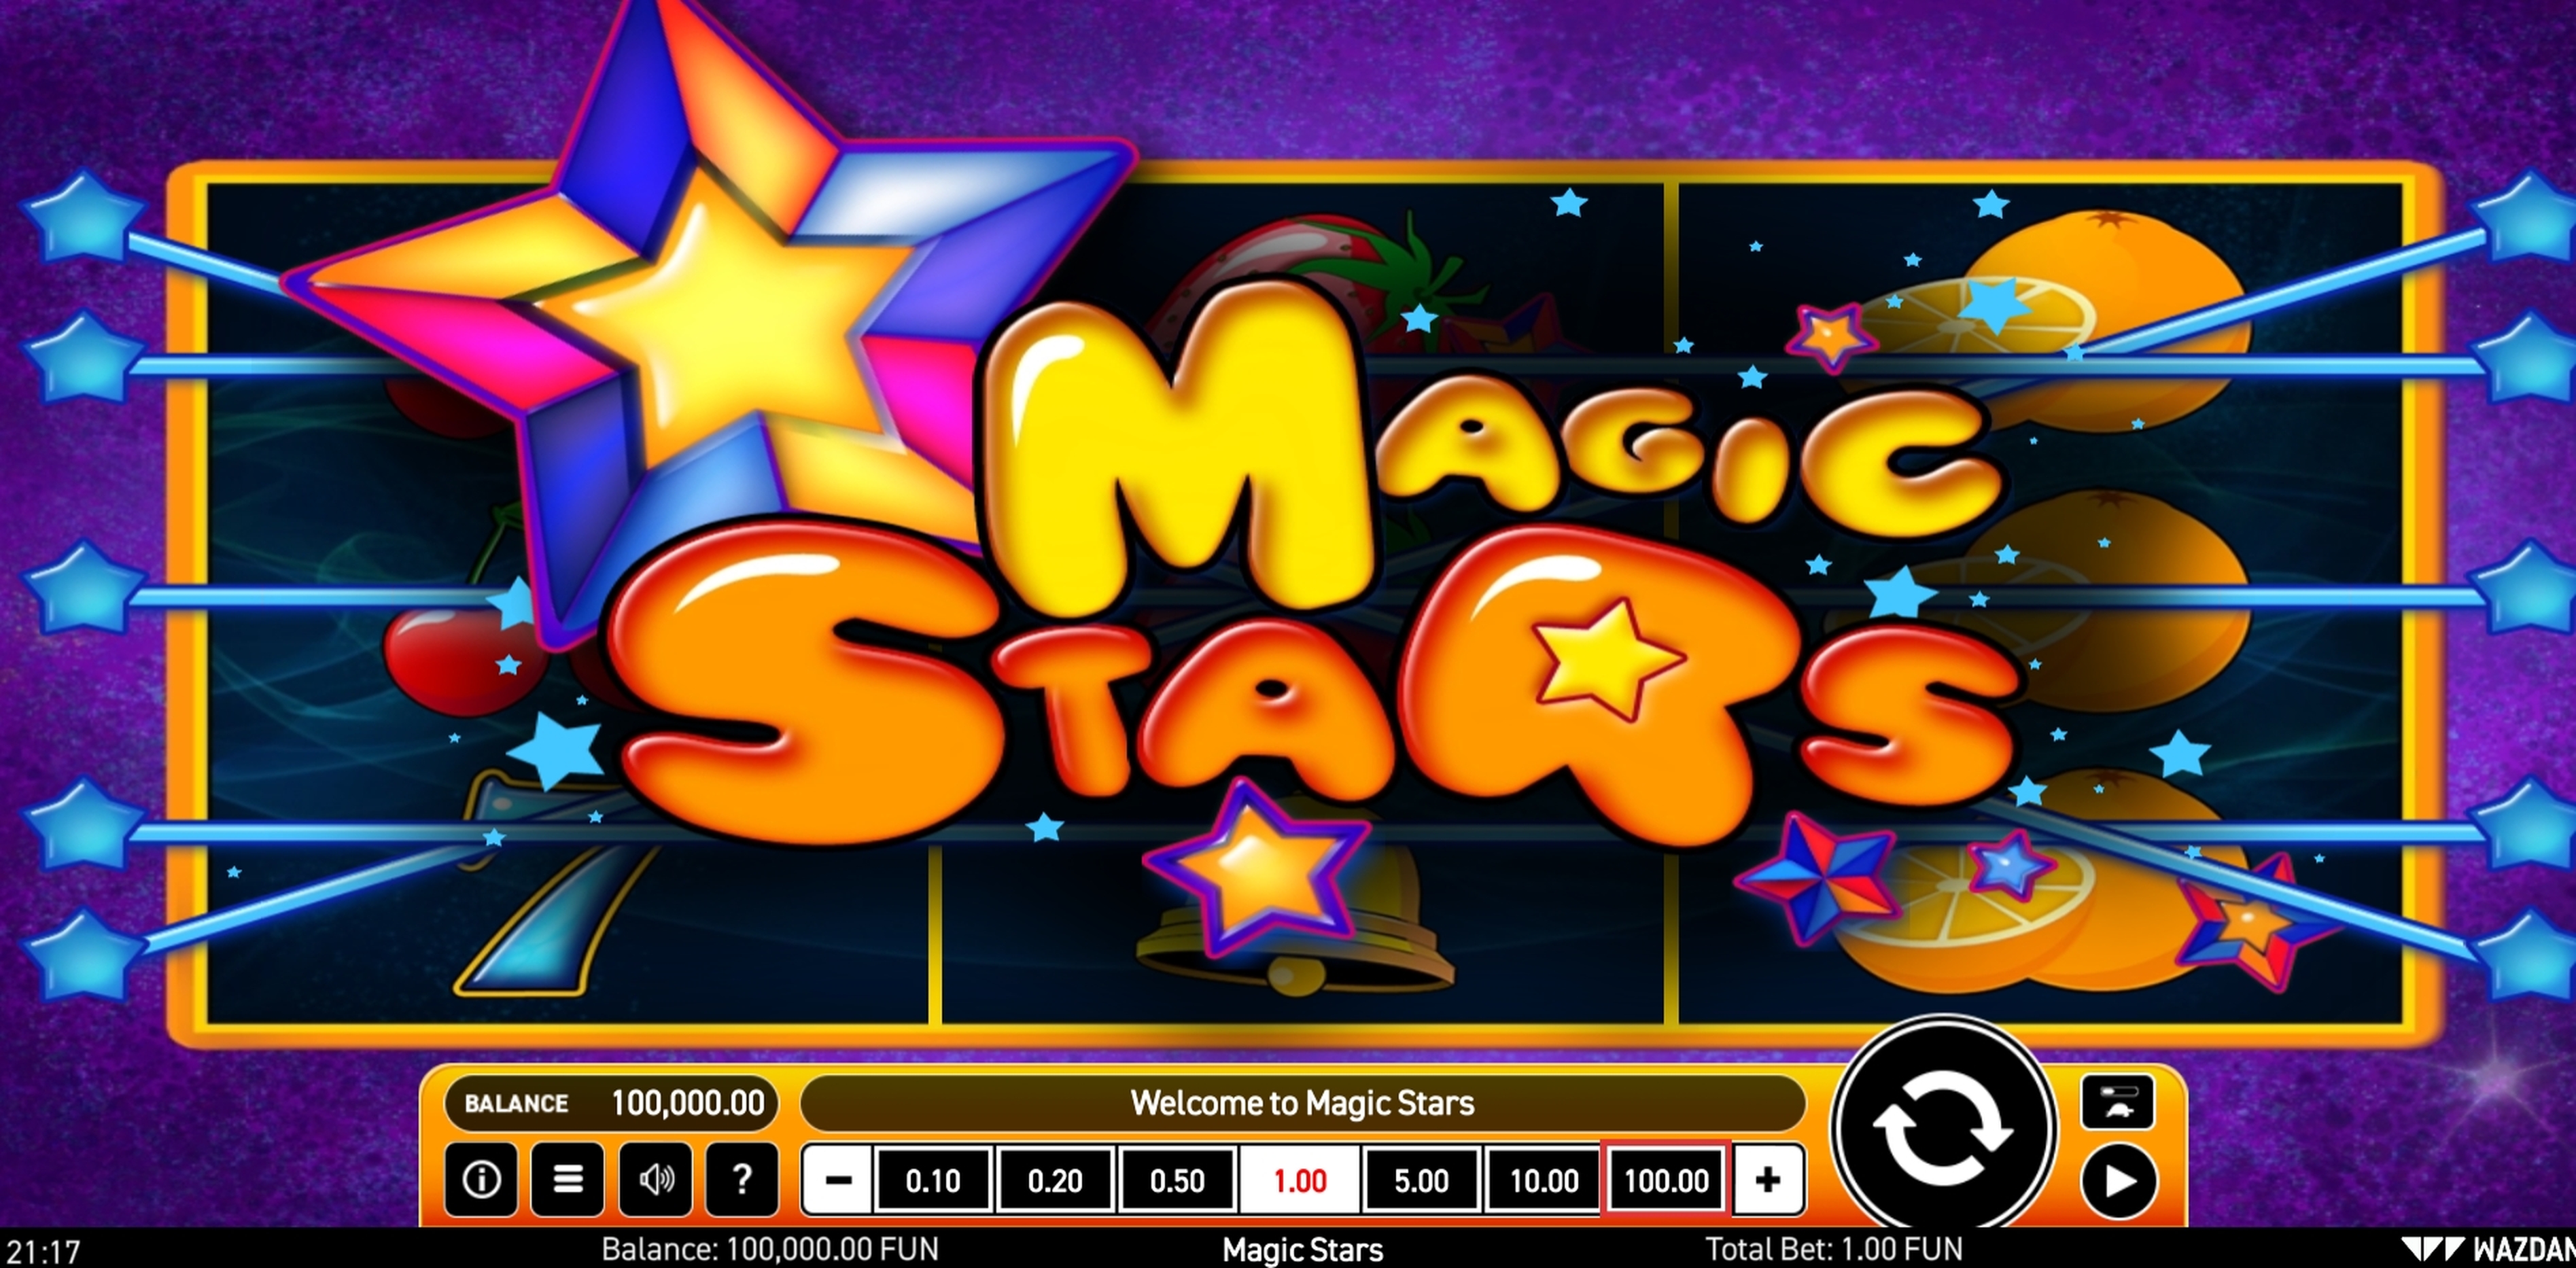 Play Magic Stars Free Casino Slot Game by Wazdan